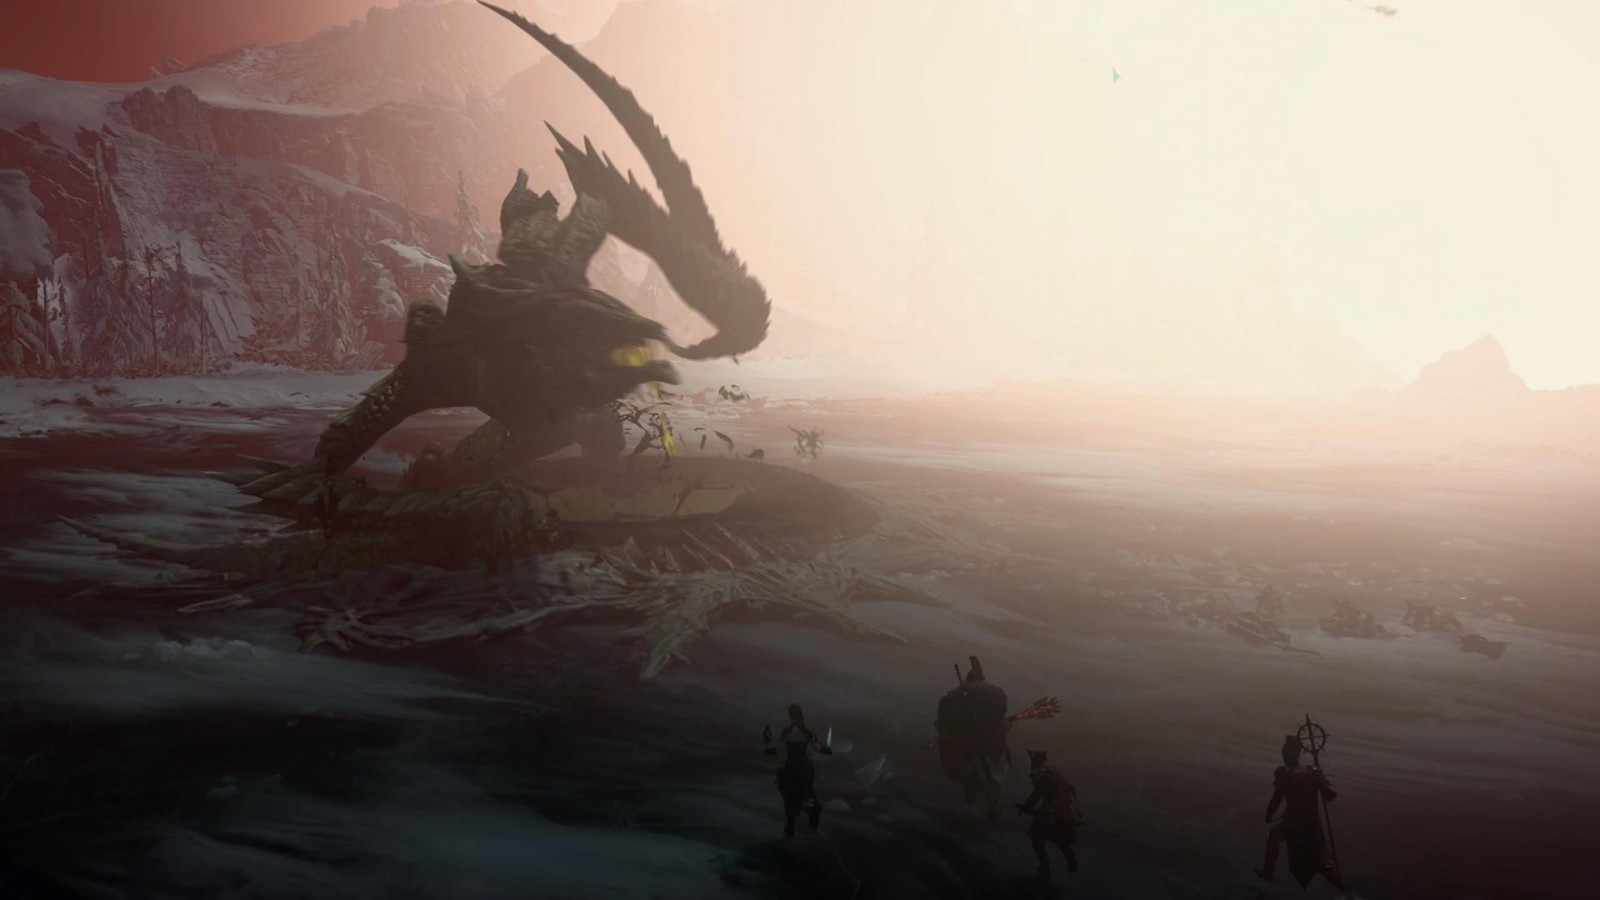 PS5《暗黑4》Beta测试中文预告 3月18日深入地狱